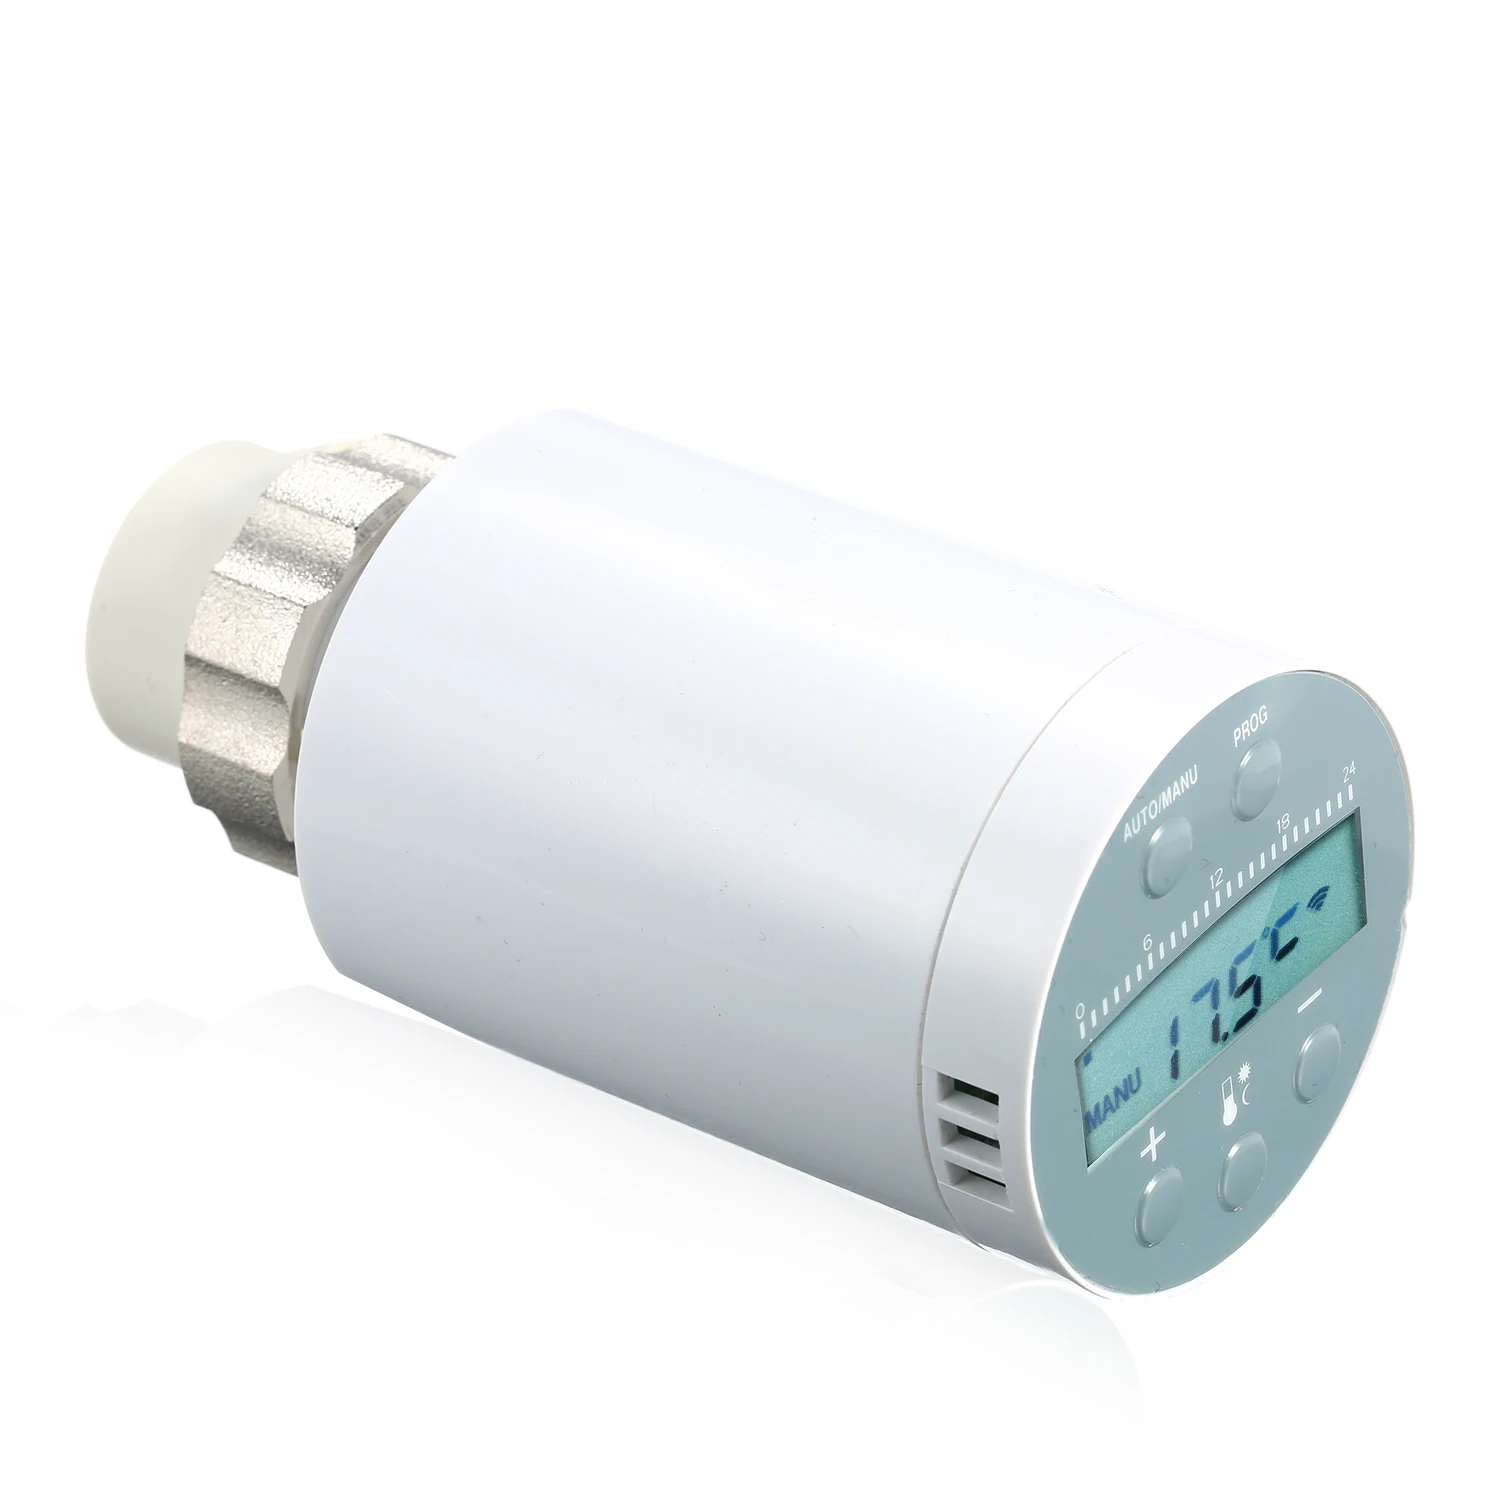 SEA801-APP термостат регулятор температуры нагрева и точный TRV термостатический клапан радиатора программируемый голосовой контроллер